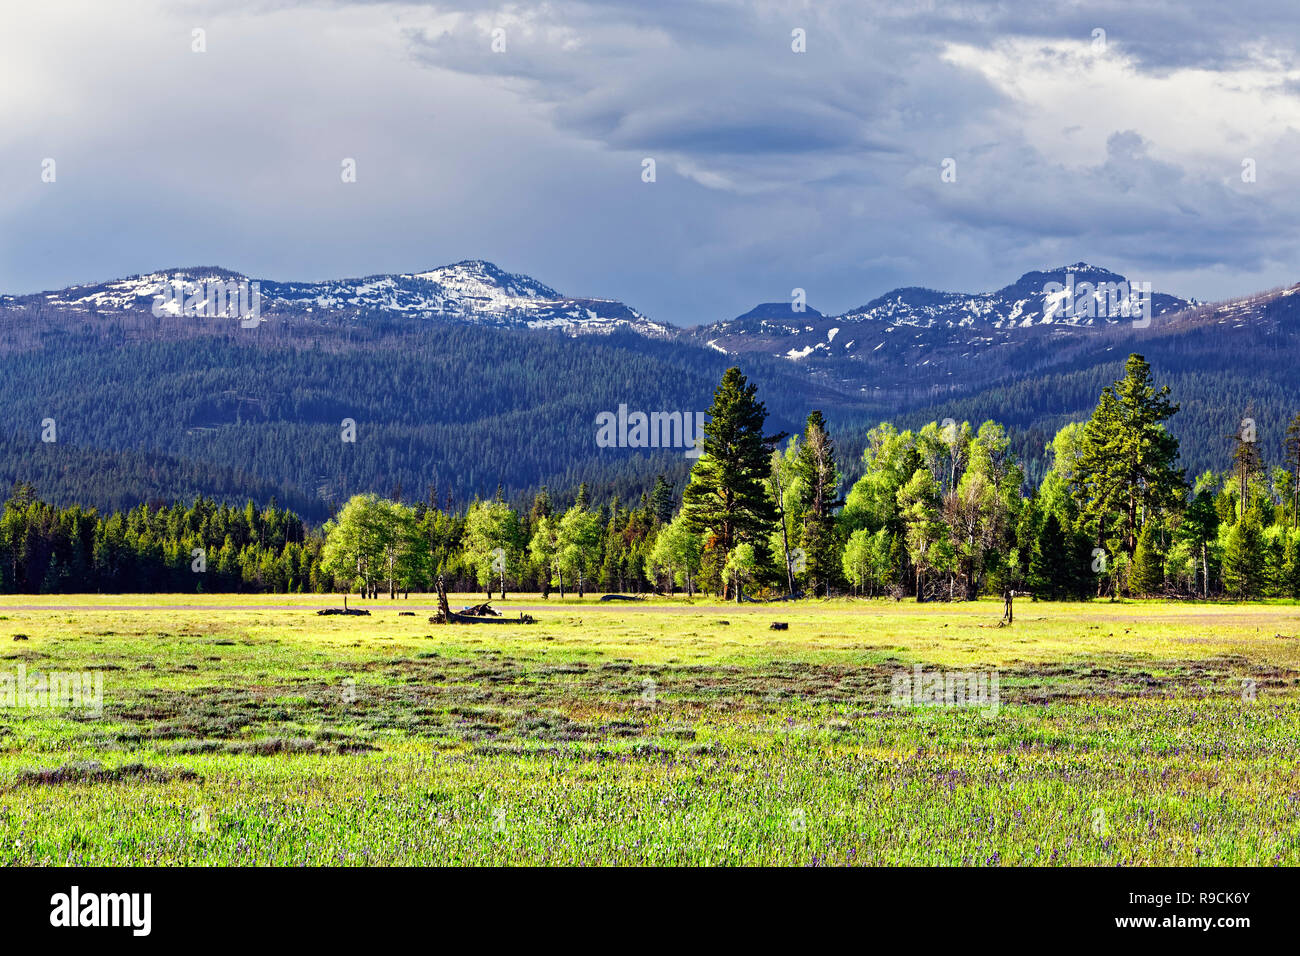 42,894.03585 flache breite üppige grüne Logan Valley's Prairie, strahlender Sonnenschein, gemischte Bäume auf Edge & Snowy Mountains im Hintergrund, zentrale Oregon, USA Stockfoto